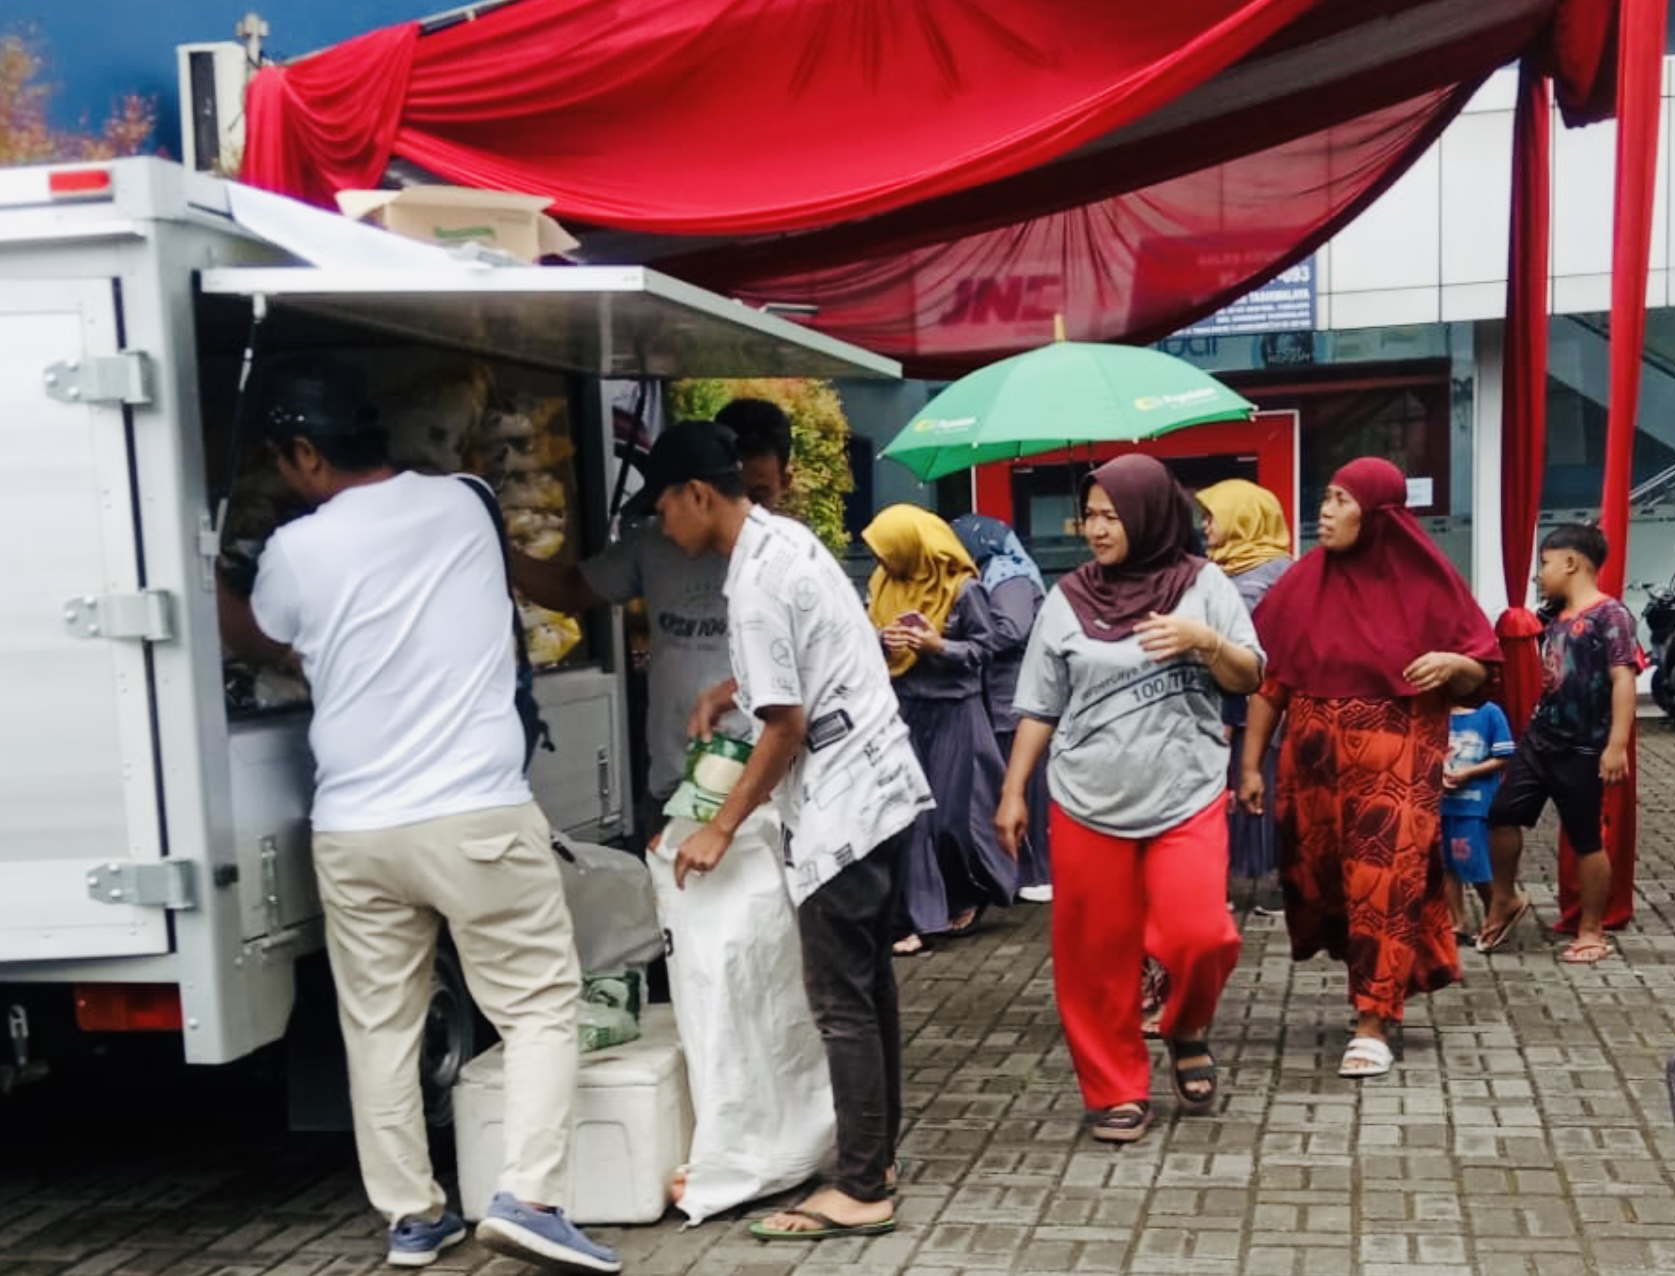 Sembako Murah di Operasi Pasar Murah di Graha Pena Radar Tasikmalaya, Berikut Daftar Harganya